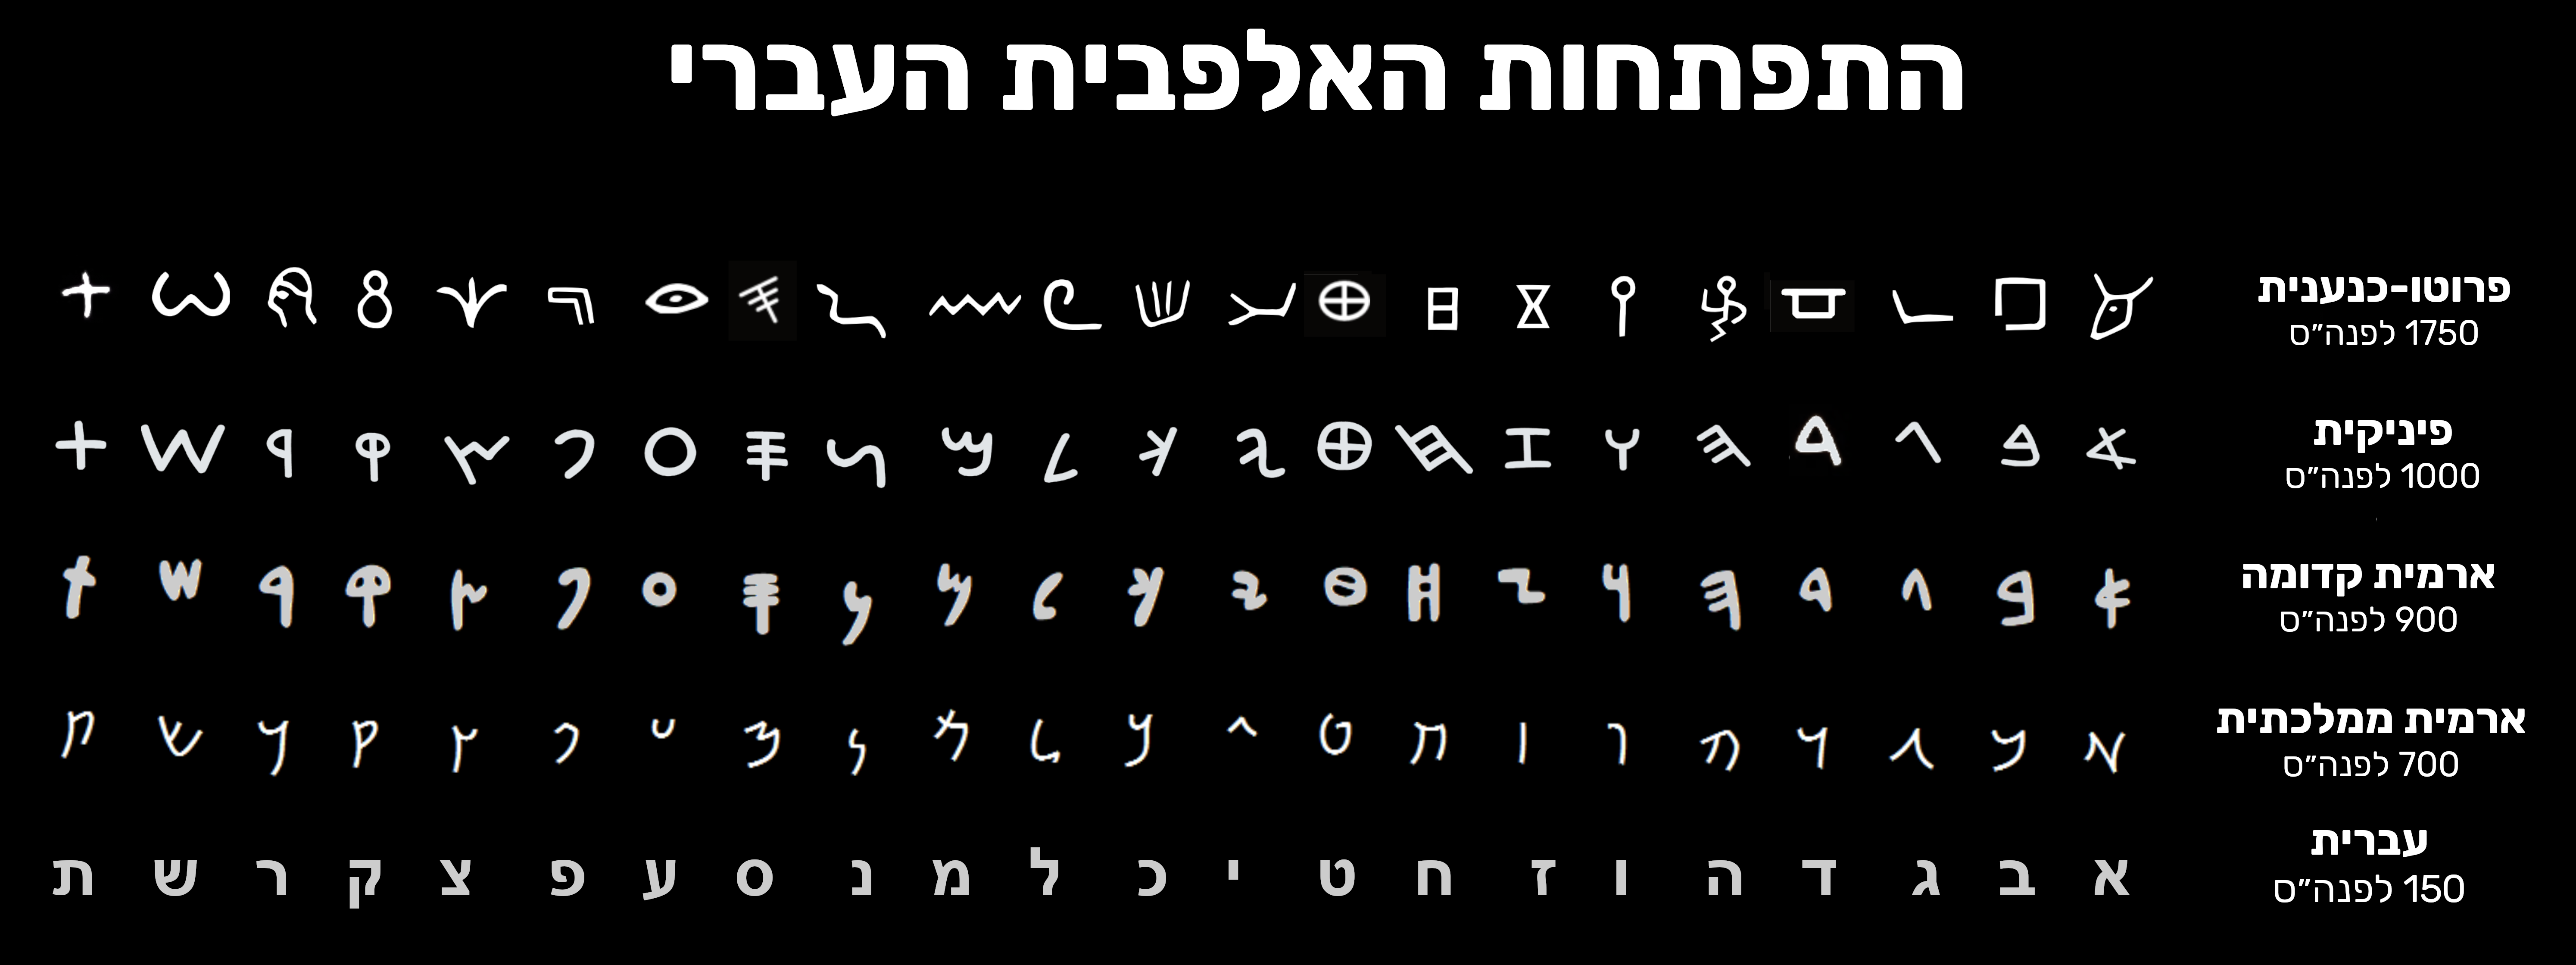 האבולוציה של האלפבית העברי